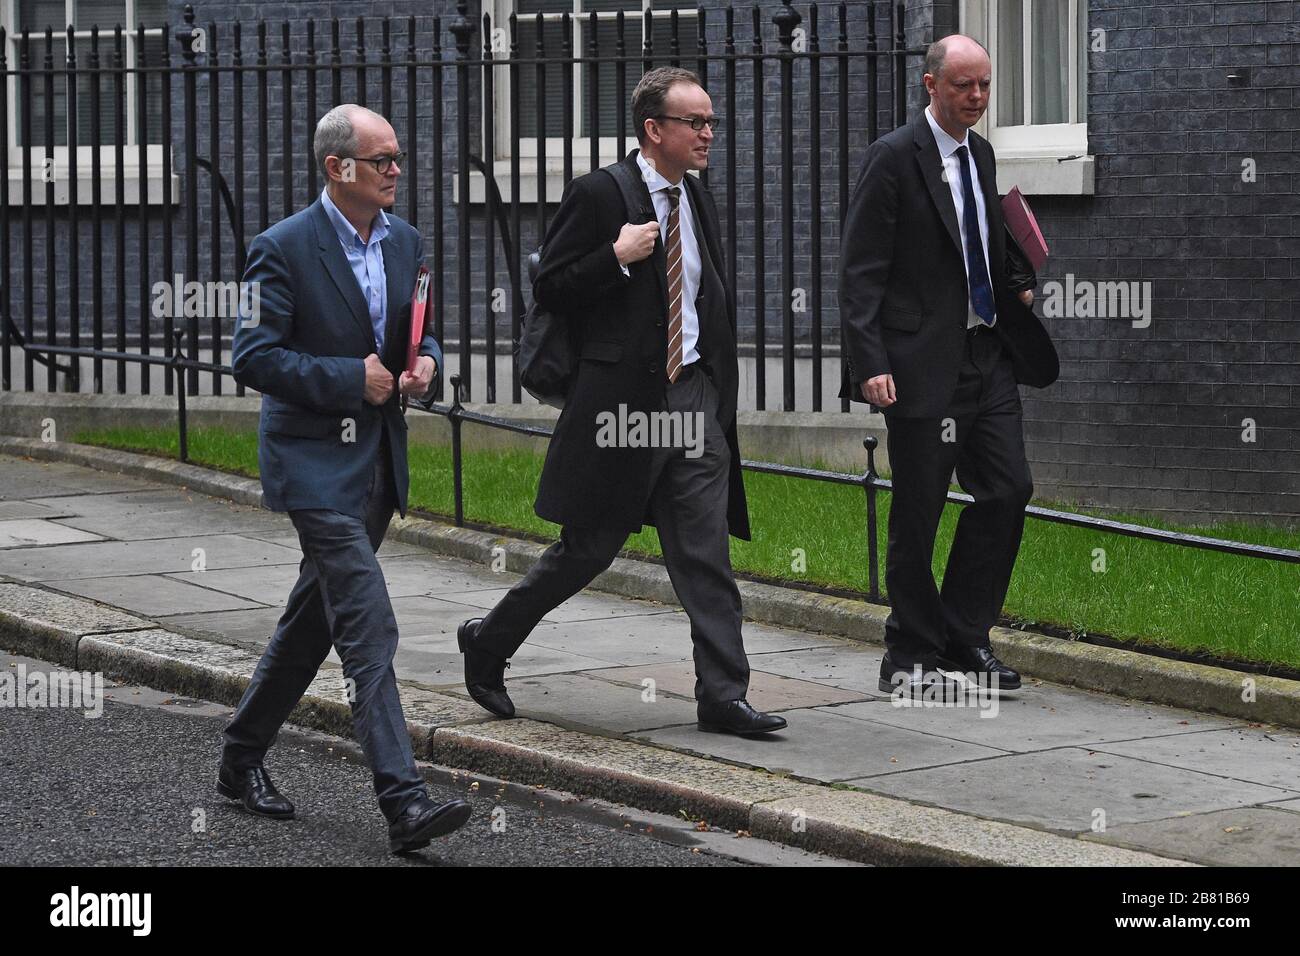 Le conseiller scientifique en chef Sir Patrick Vallance (à gauche) et le directeur médical en chef de l'Angleterre Chris Whitty (à droite) quittent la 10 Downing Street, à Londres, car le gouvernement devrait publier un projet de loi sur les pouvoirs de coronavirus d'urgence. Banque D'Images